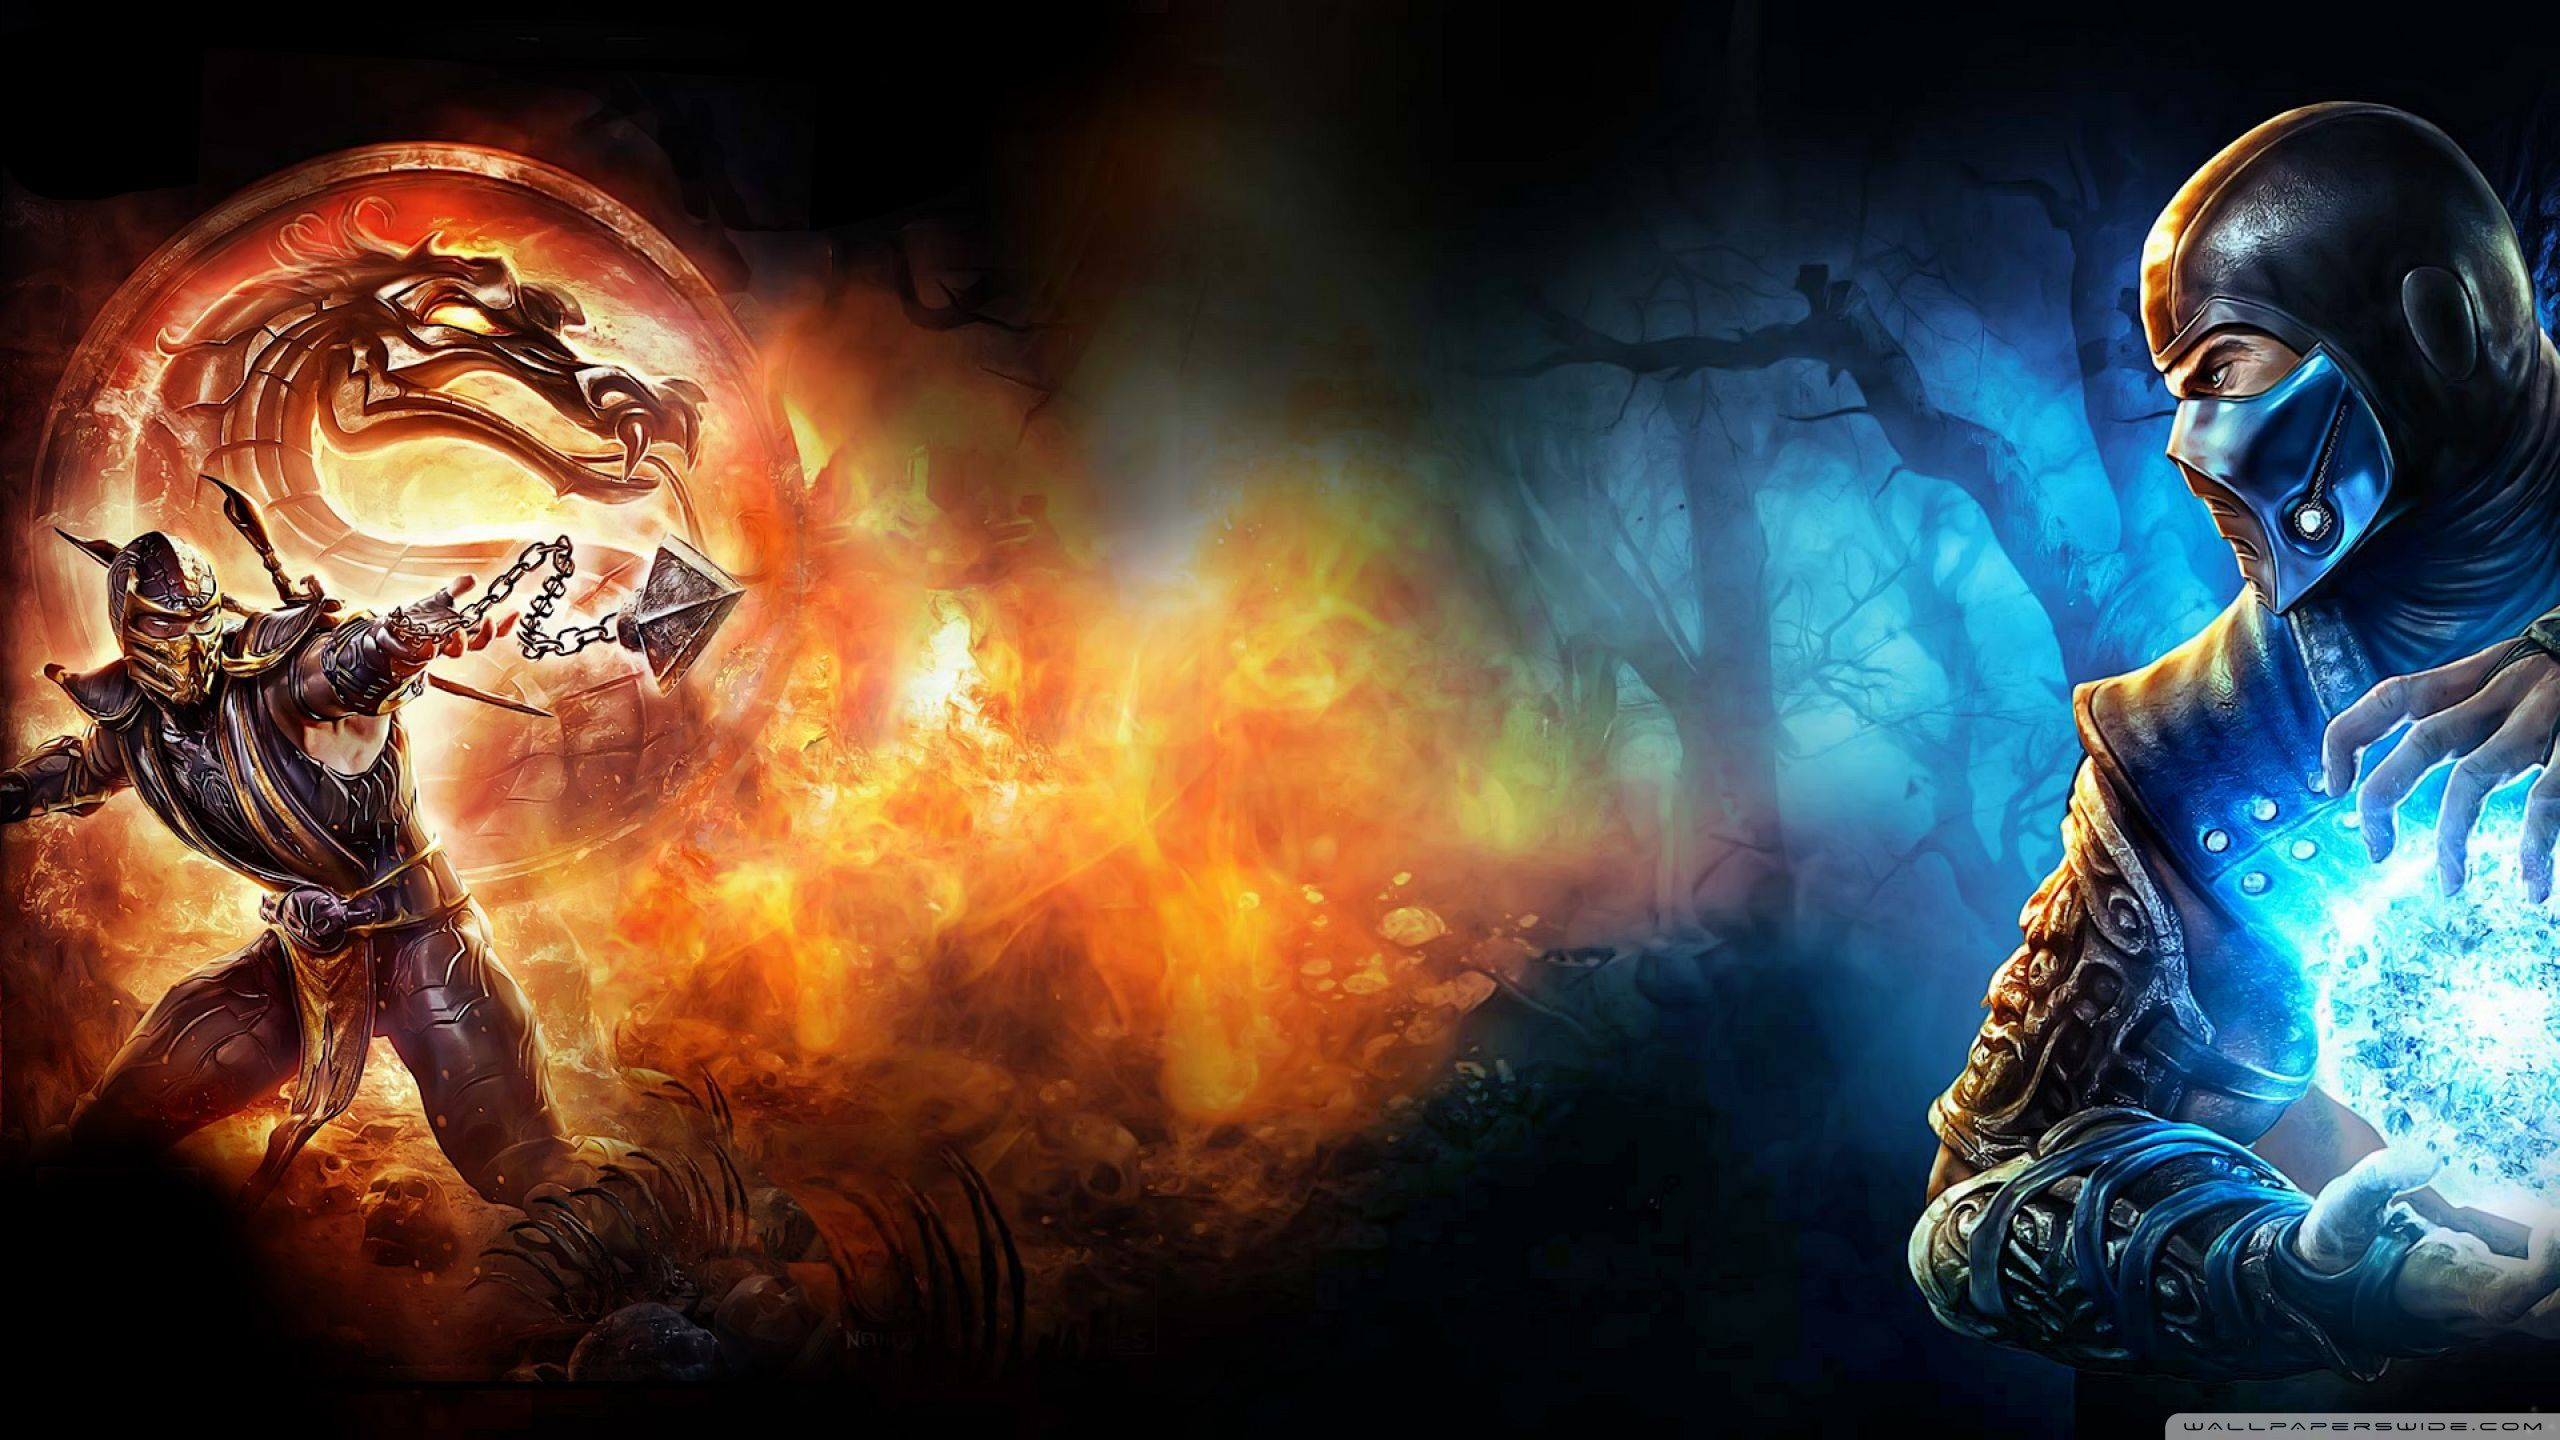 2560x1440 Mortal Kombat Scorpion vs Sub-Zero Wallpapers Top Free Mortal Kombat Scorpion vs Sub-Zero Backgrounds